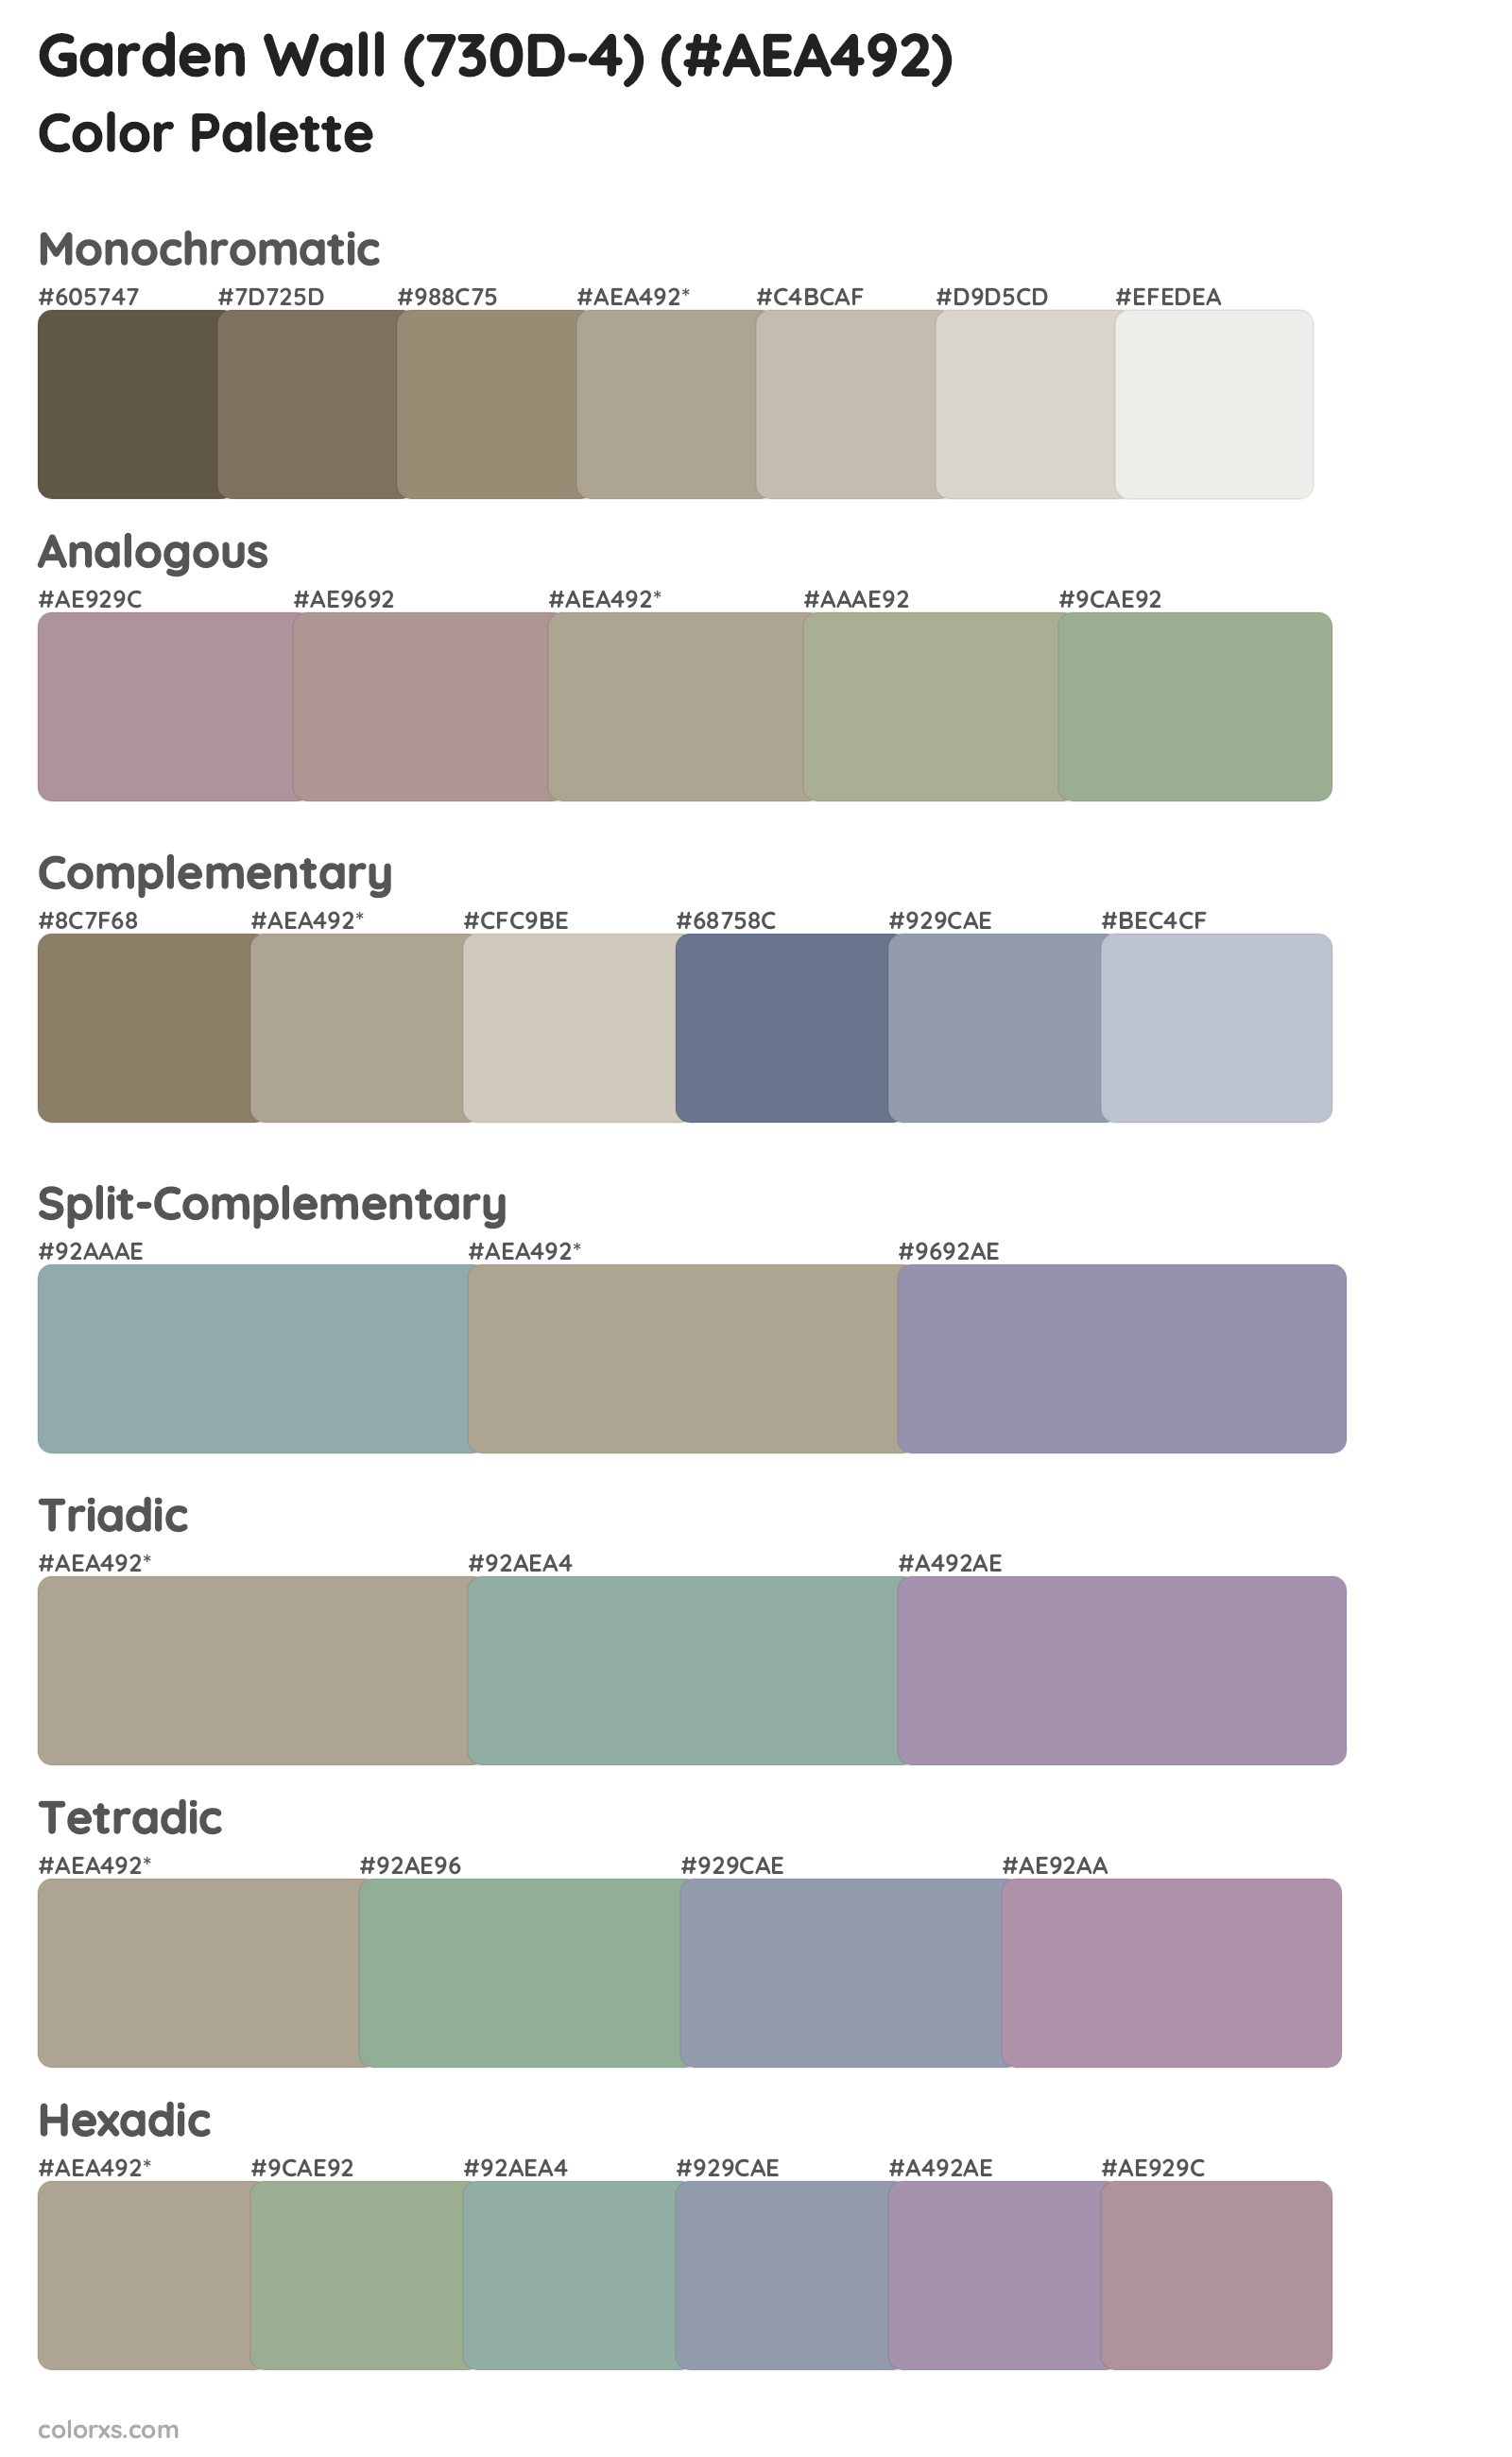 Garden Wall (730D-4) Color Scheme Palettes